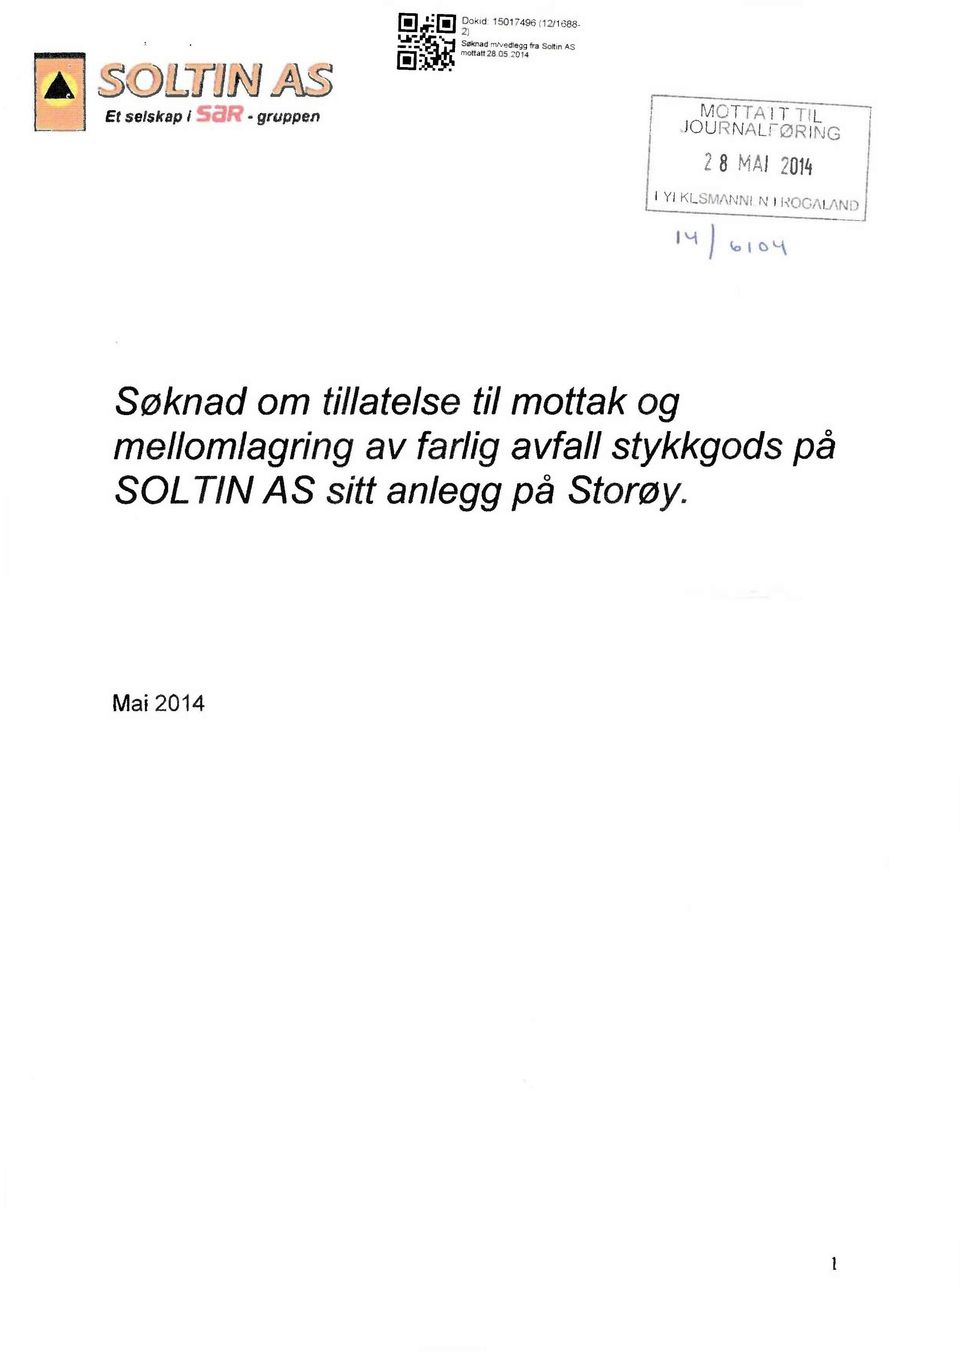 JOURNALFØRING 28 MAI2014 Søknadom tillatelsetil mottakog